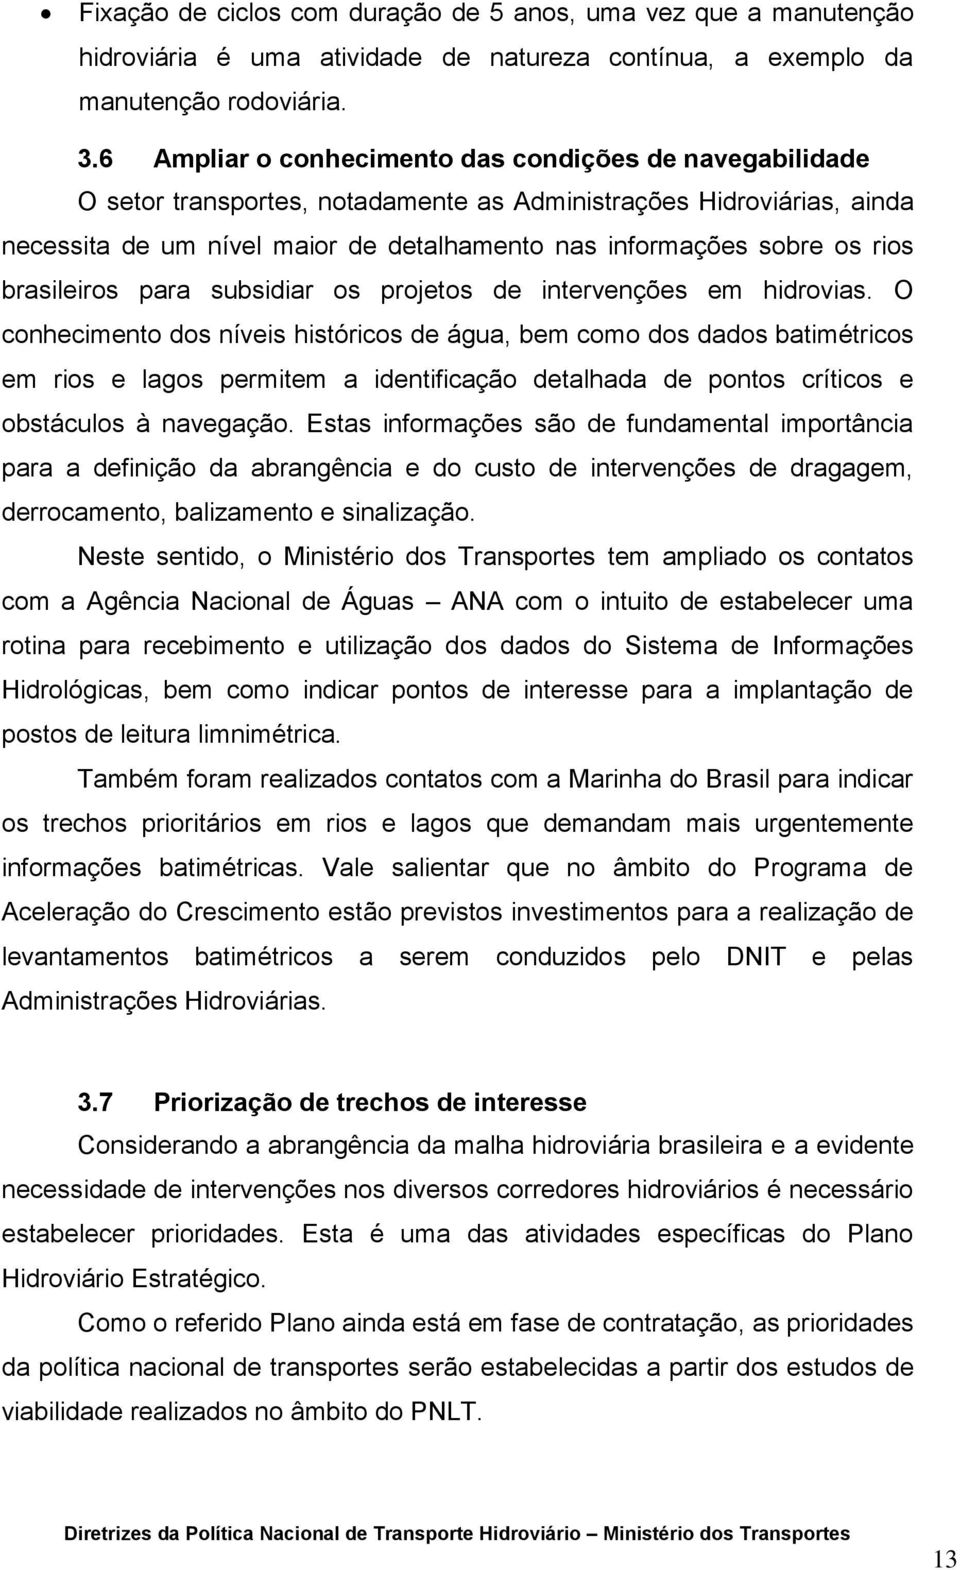 rios brasileiros para subsidiar os projetos de intervenções em hidrovias.